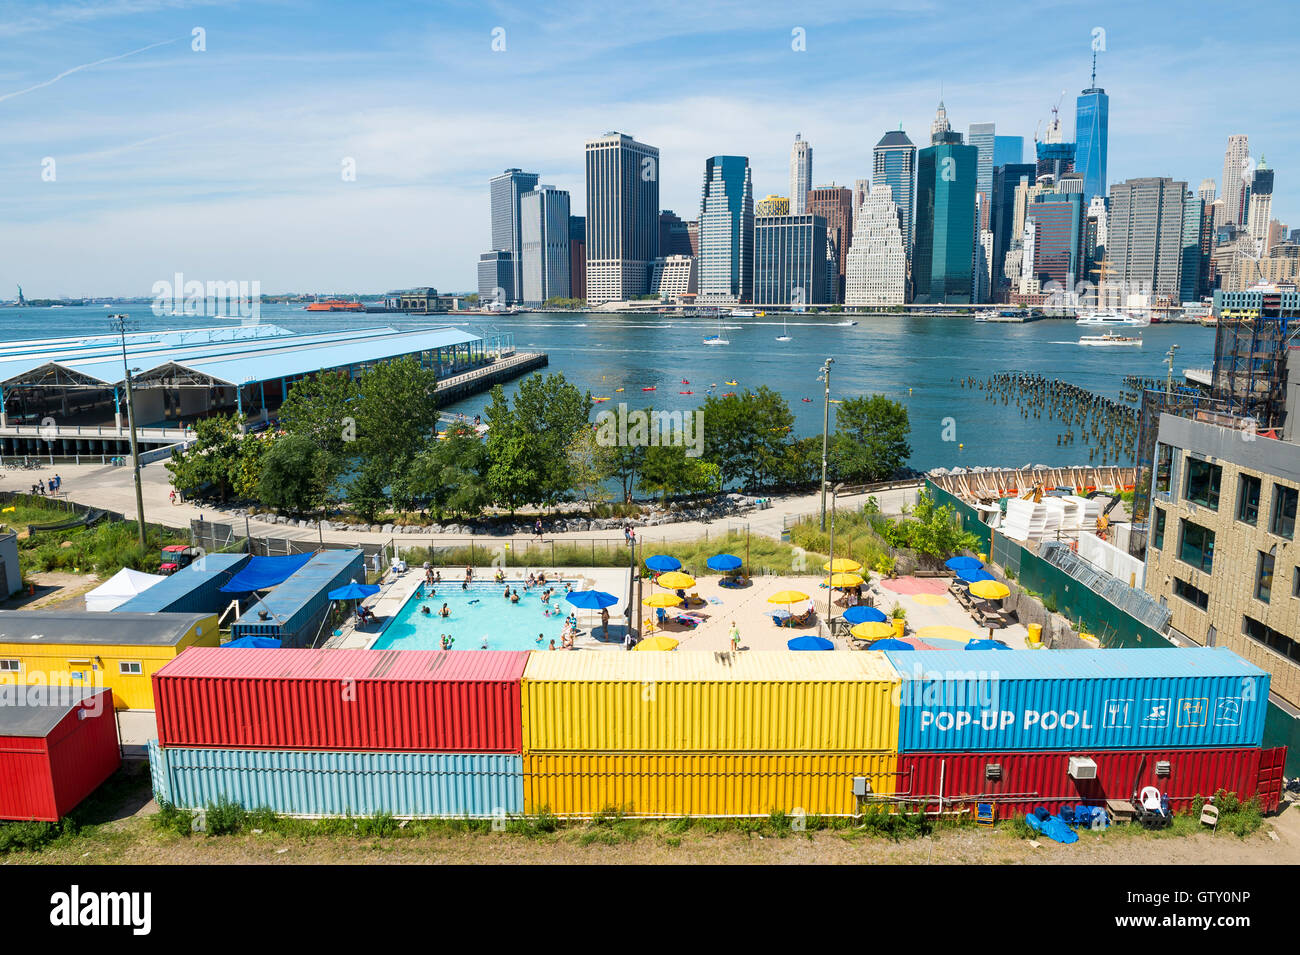 NEW YORK - 27 août 2016 : un pop-up coloré piscine dans Brooklyn Bridge Park en face de l'horizon de Manhattan. Banque D'Images